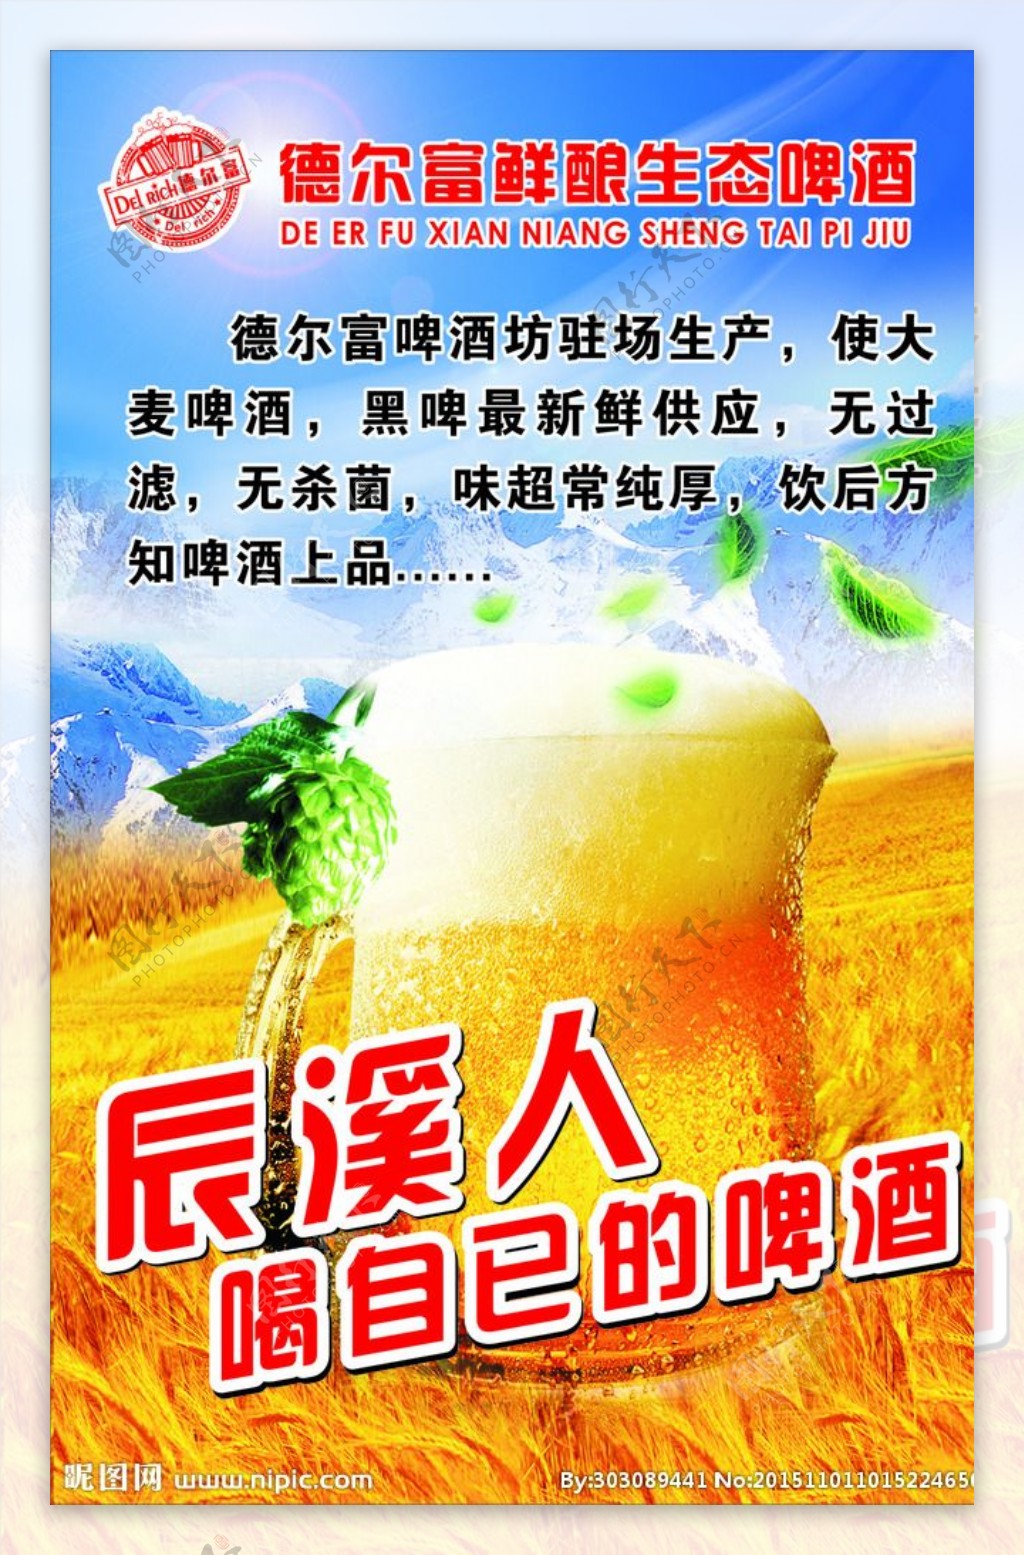 德尔富啤酒海报